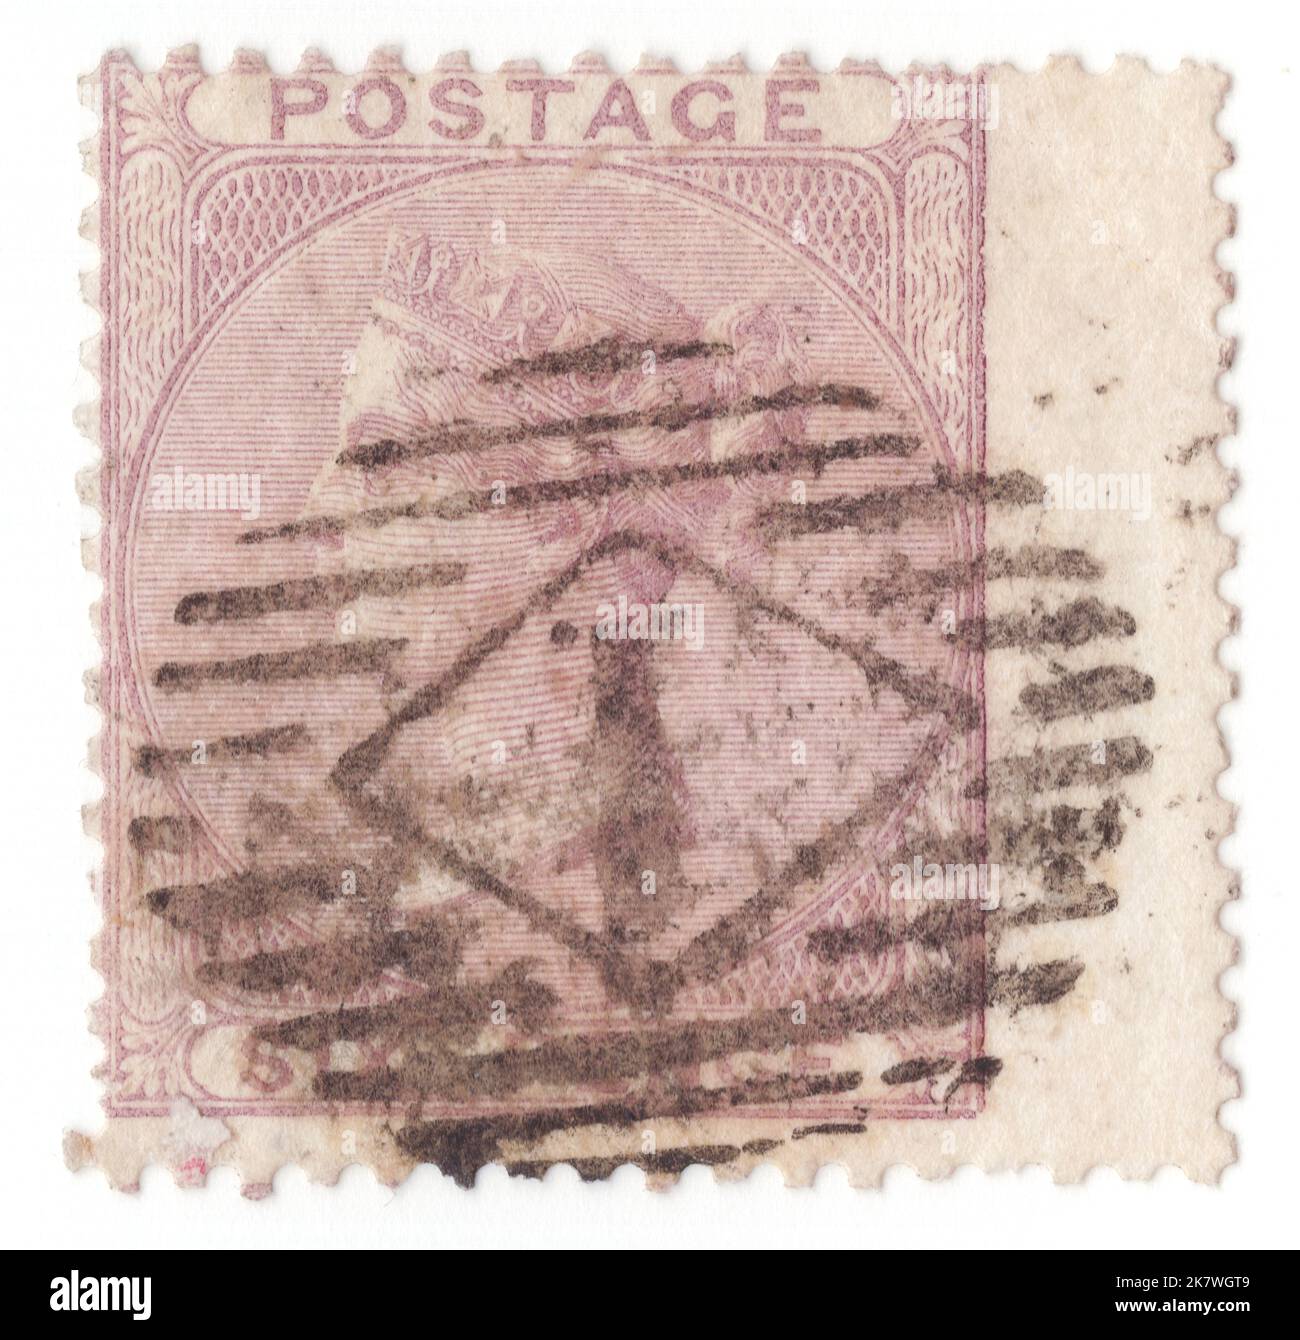 REINO UNIDO - 1856: Un sello de franqueo de lila de 6 pence que muestra el retrato de la reina Victoria en marco circular Foto de stock